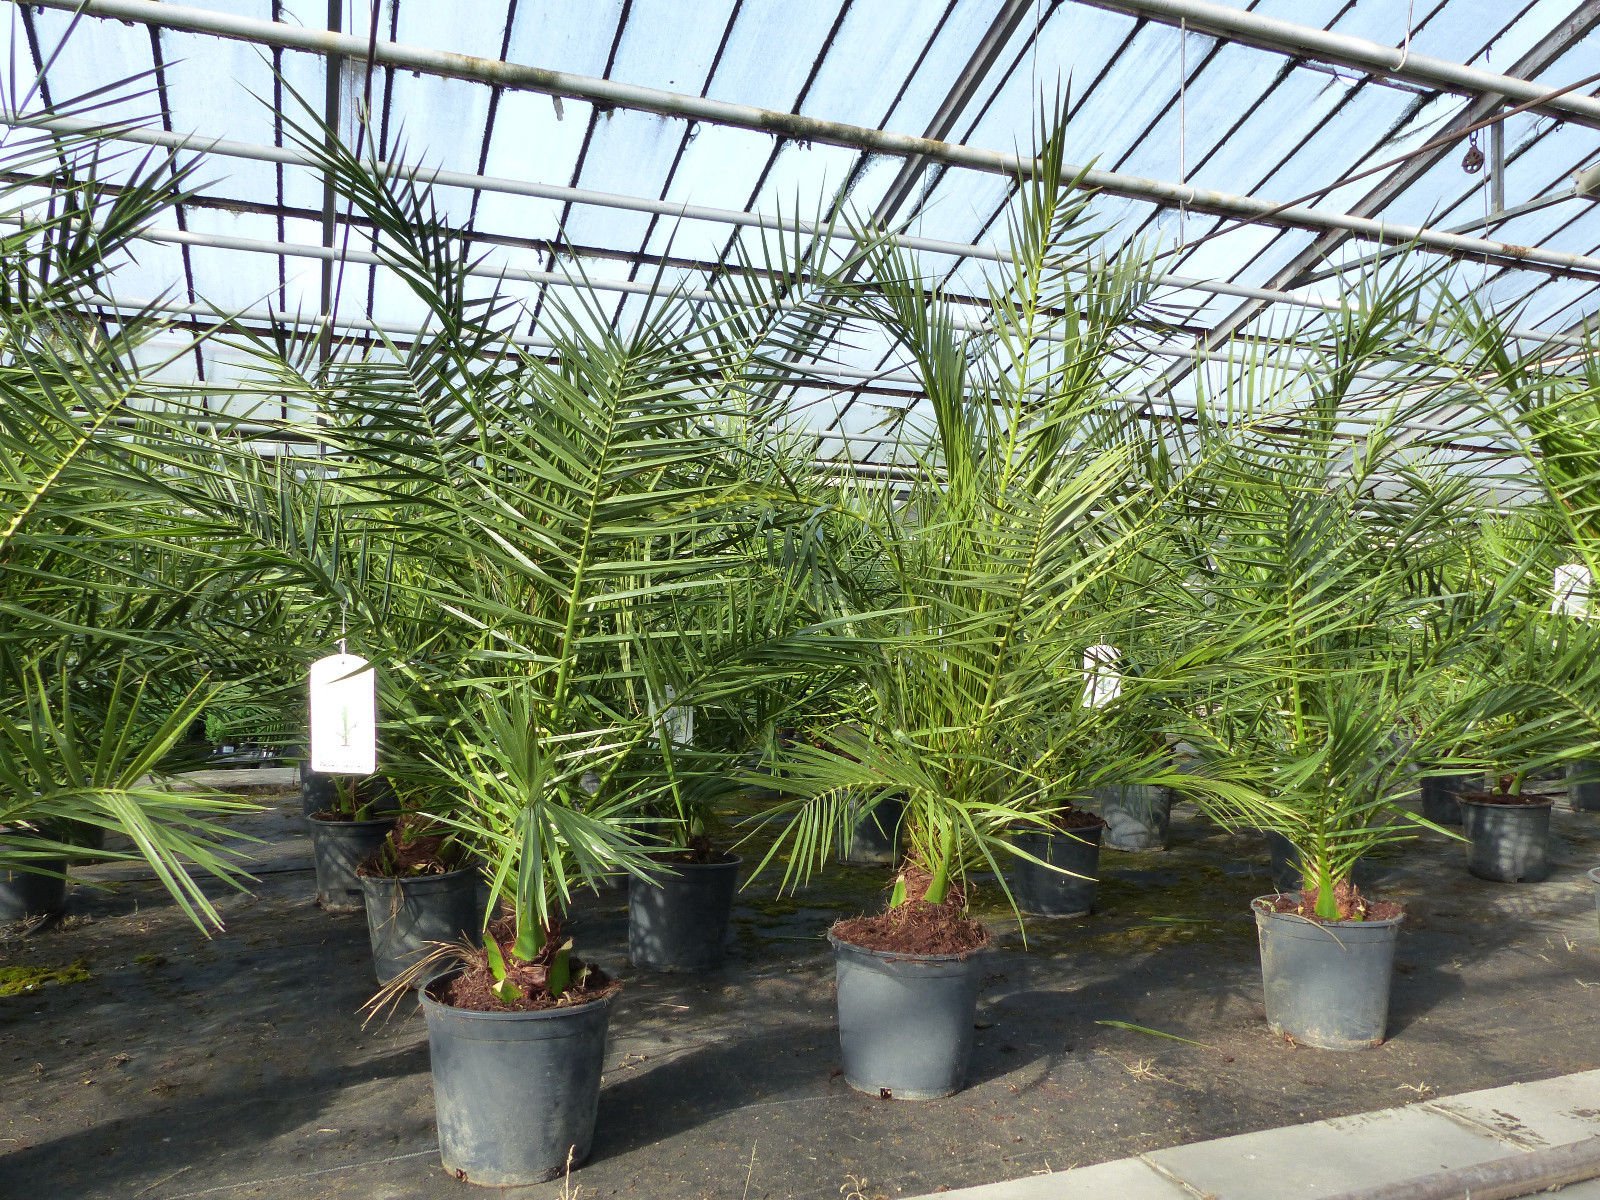 2 Stück Palme 90-120 cm, Phoenix canariensis, kanarische Dattelpalme, kräftige Palmen, keine Jungpflanzen